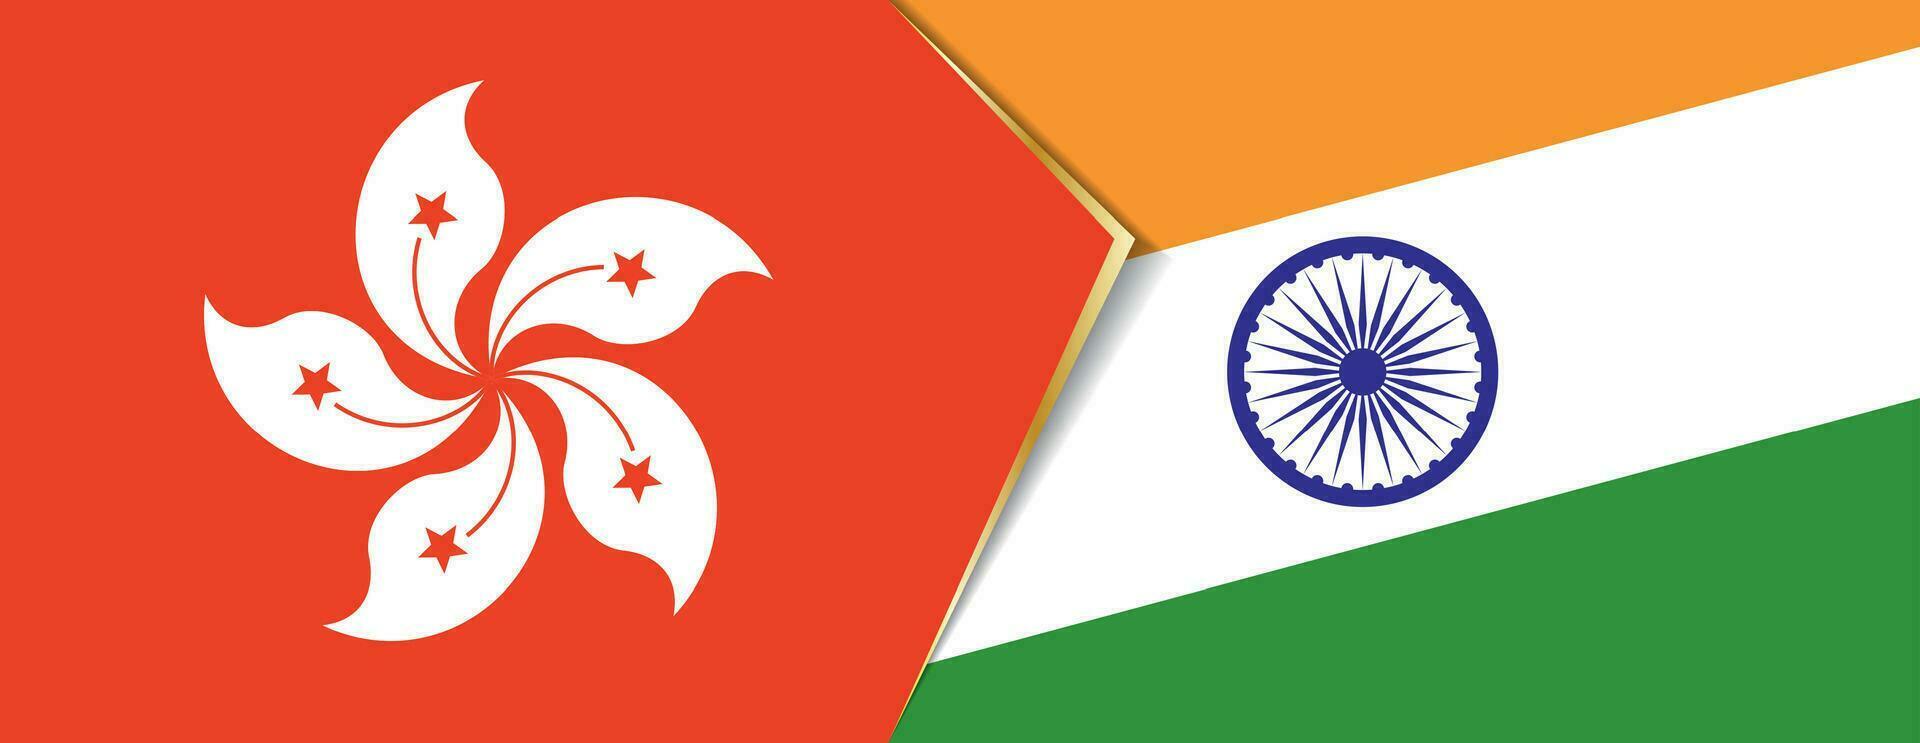 hong kong e Índia bandeiras, dois vetor bandeiras.